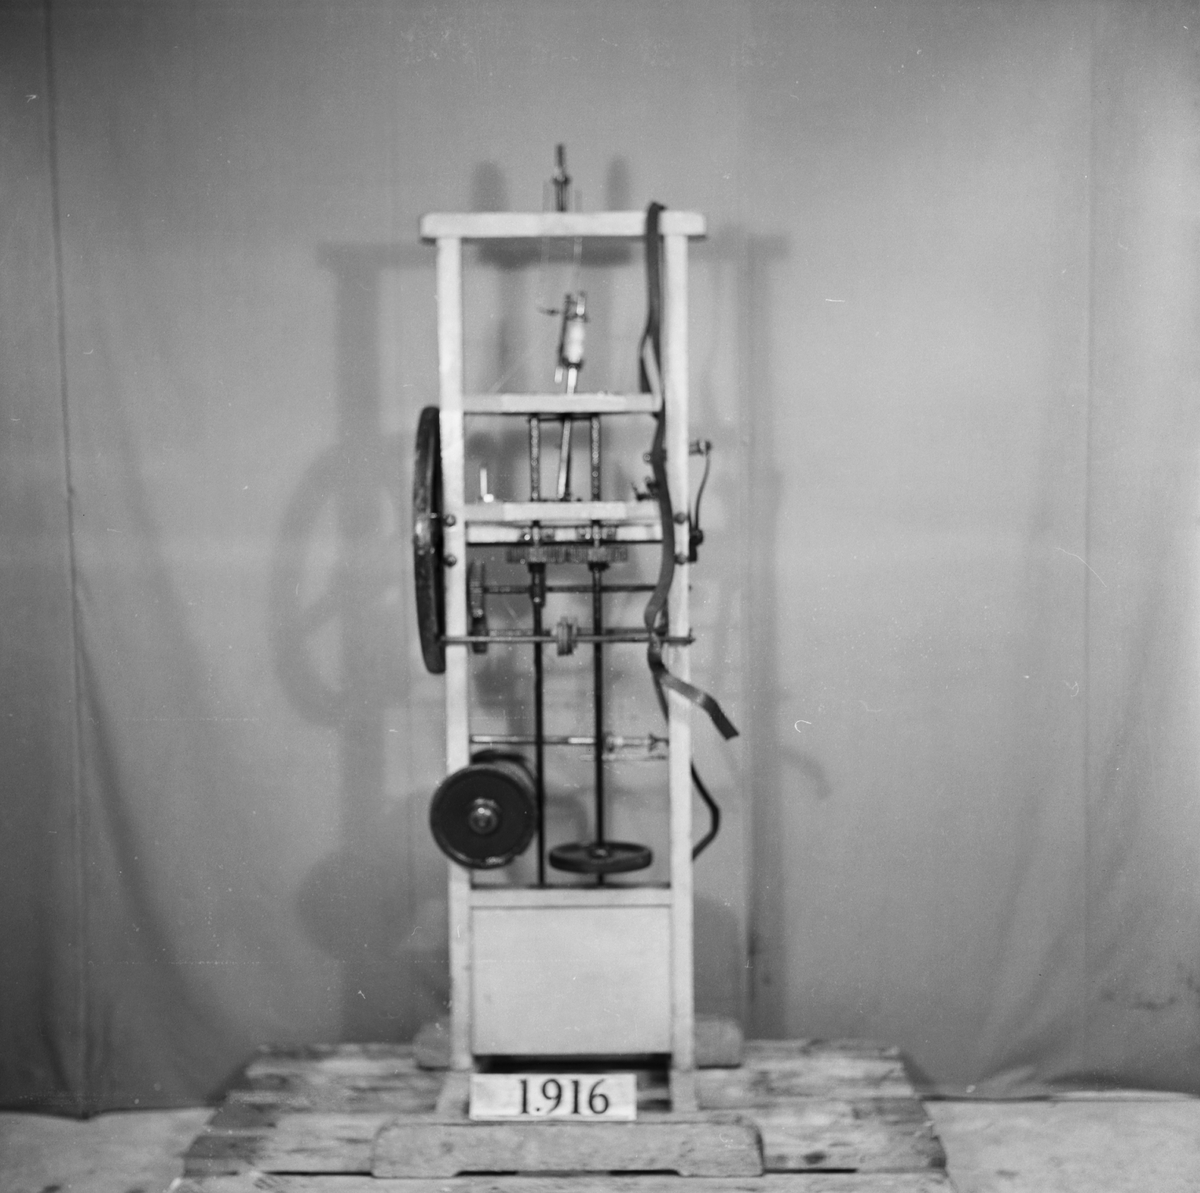 Maskin för flätning av ljusvekar. Text på föremålet: "C-c-14 N:o 155".